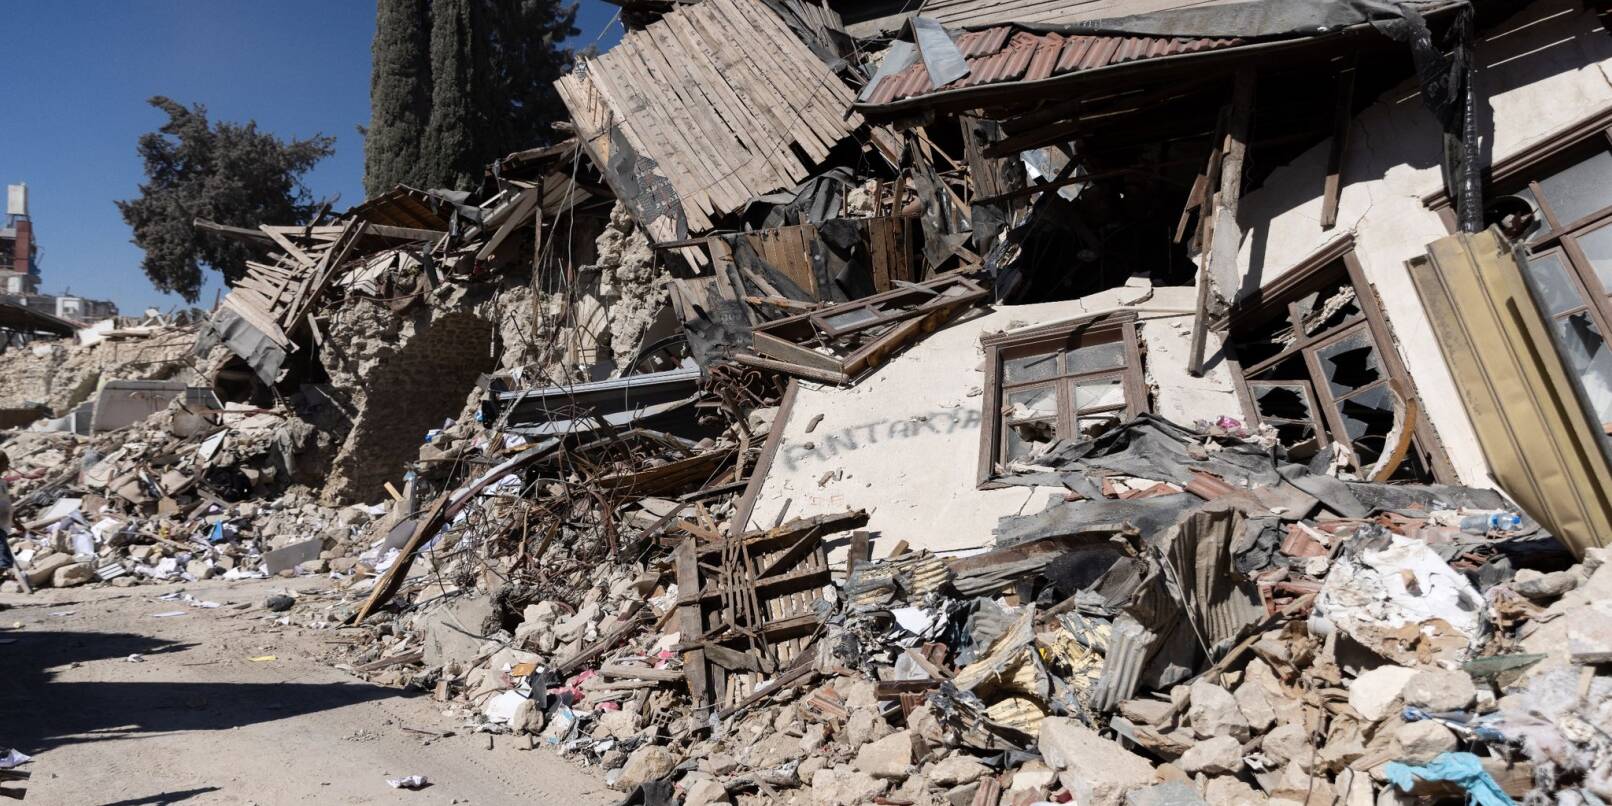 Trümmer liegen in der türkischen Stadt Antakya, wo ein heftiges Erdbeben im Februar schwere Schäden anrichtete.